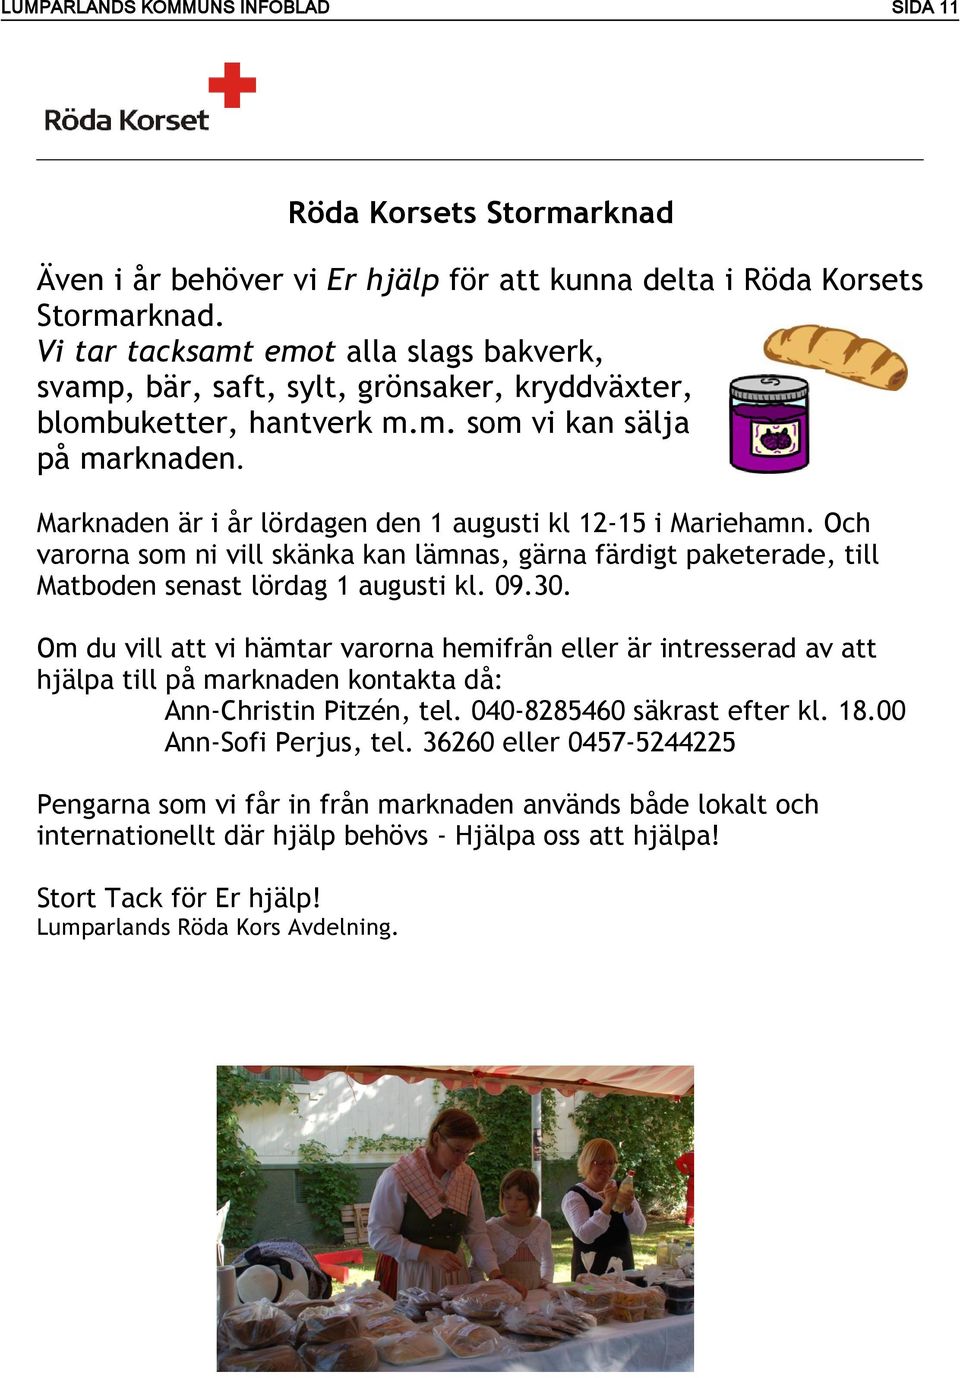 Marknaden är i år lördagen den 1 augusti kl 12-15 i Mariehamn. Och varorna som ni vill skänka kan lämnas, gärna färdigt paketerade, till Matboden senast lördag 1 augusti kl. 09.30.